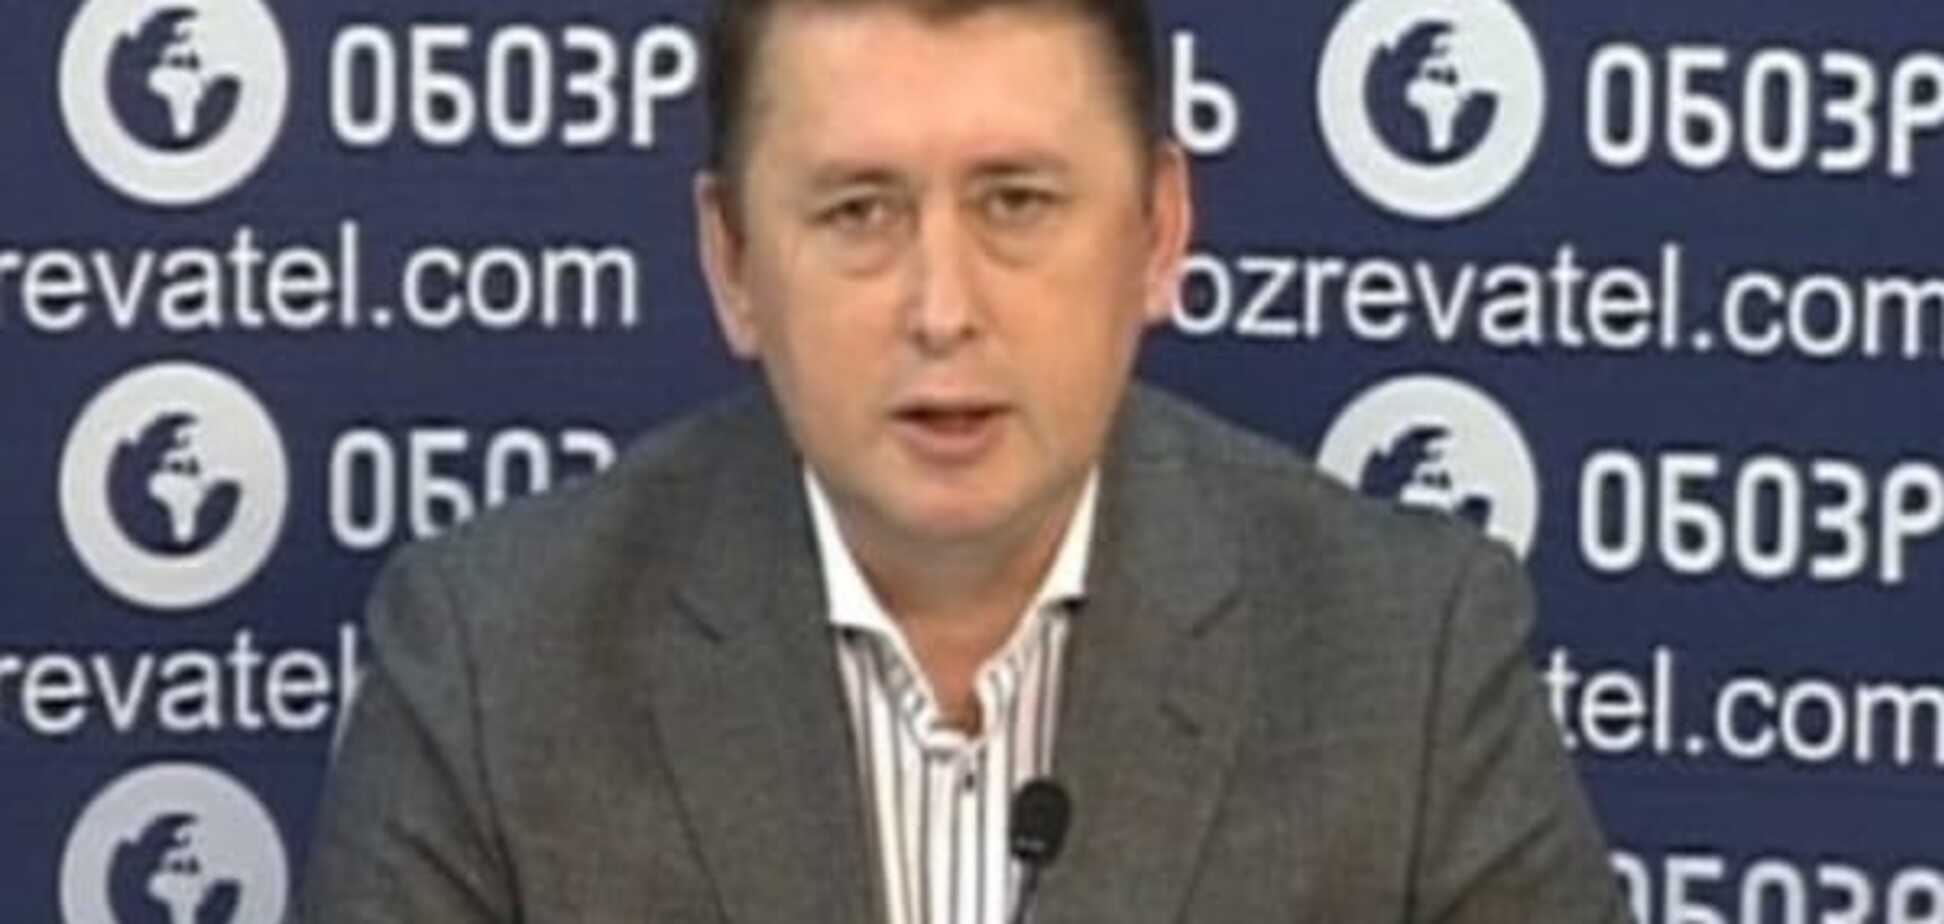 Мельниченко заявил о наличии у него компромата на Порошенко